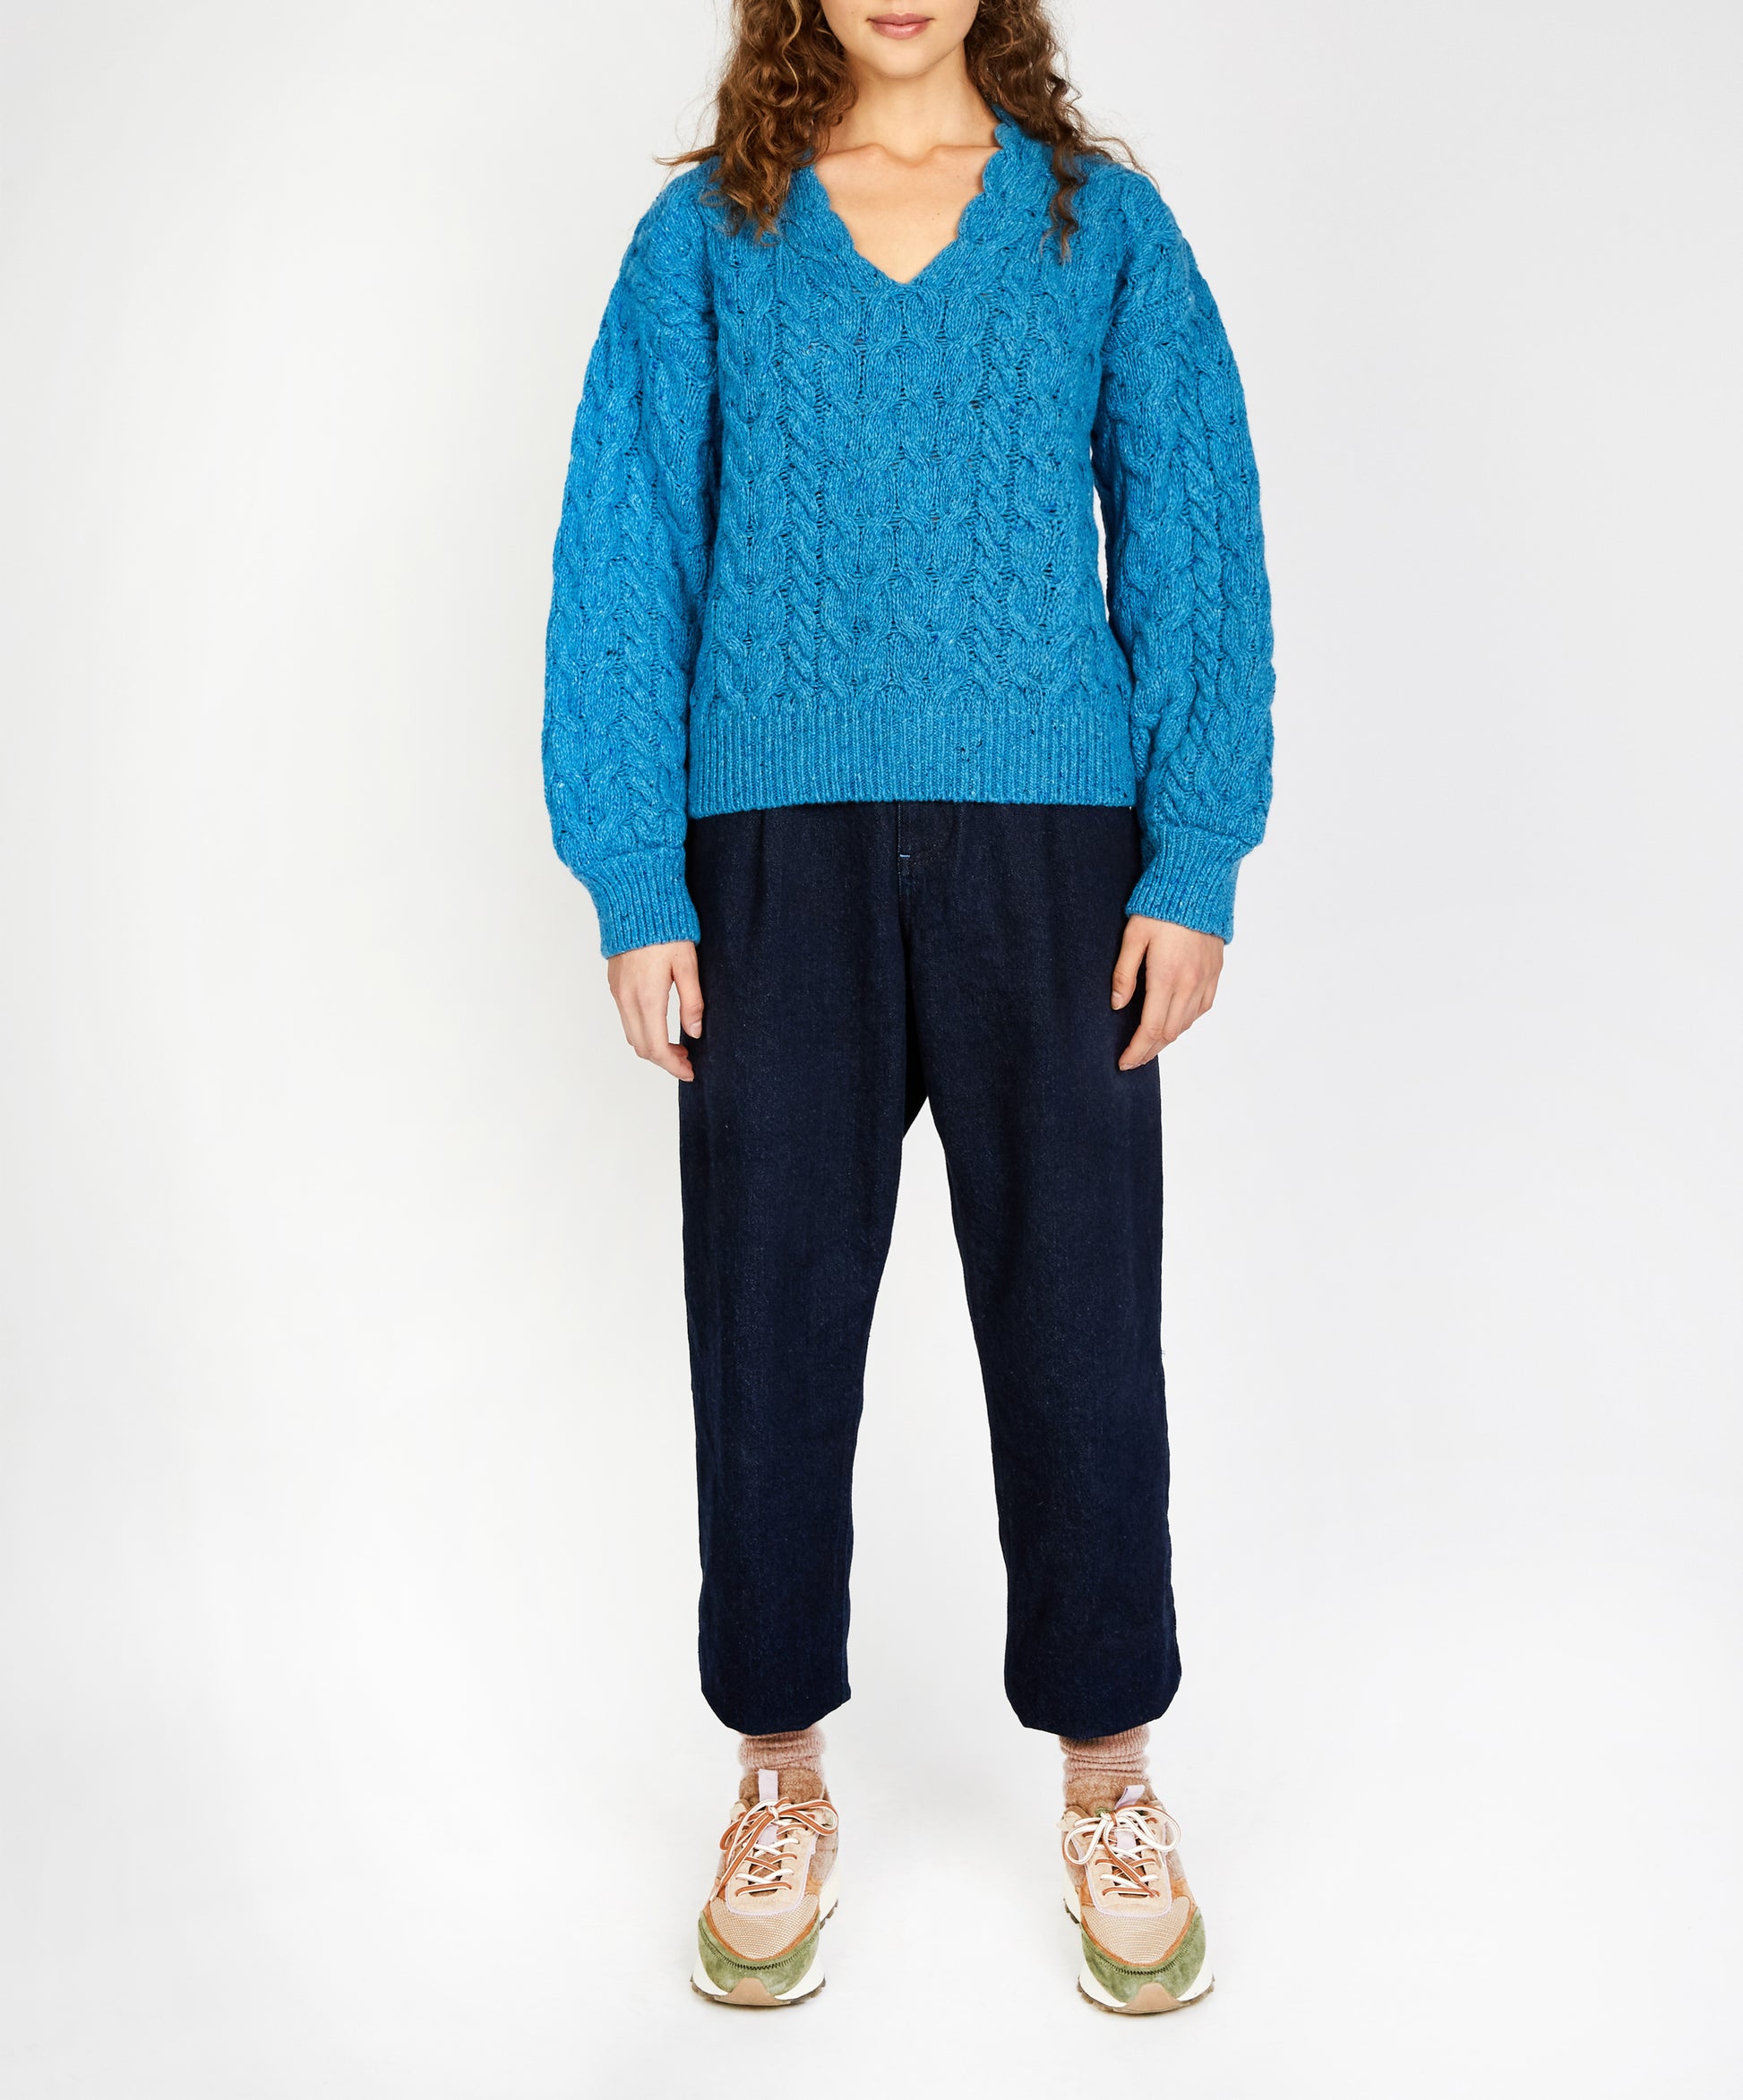 IrelandsEye Knitwear Hapenny Horseshoe Sweater Forget-Me-Not Blue